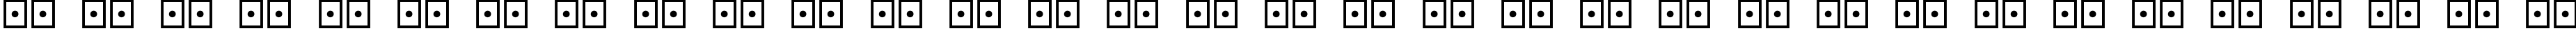 Пример написания русского алфавита шрифтом Futurama Alien Alphabet One